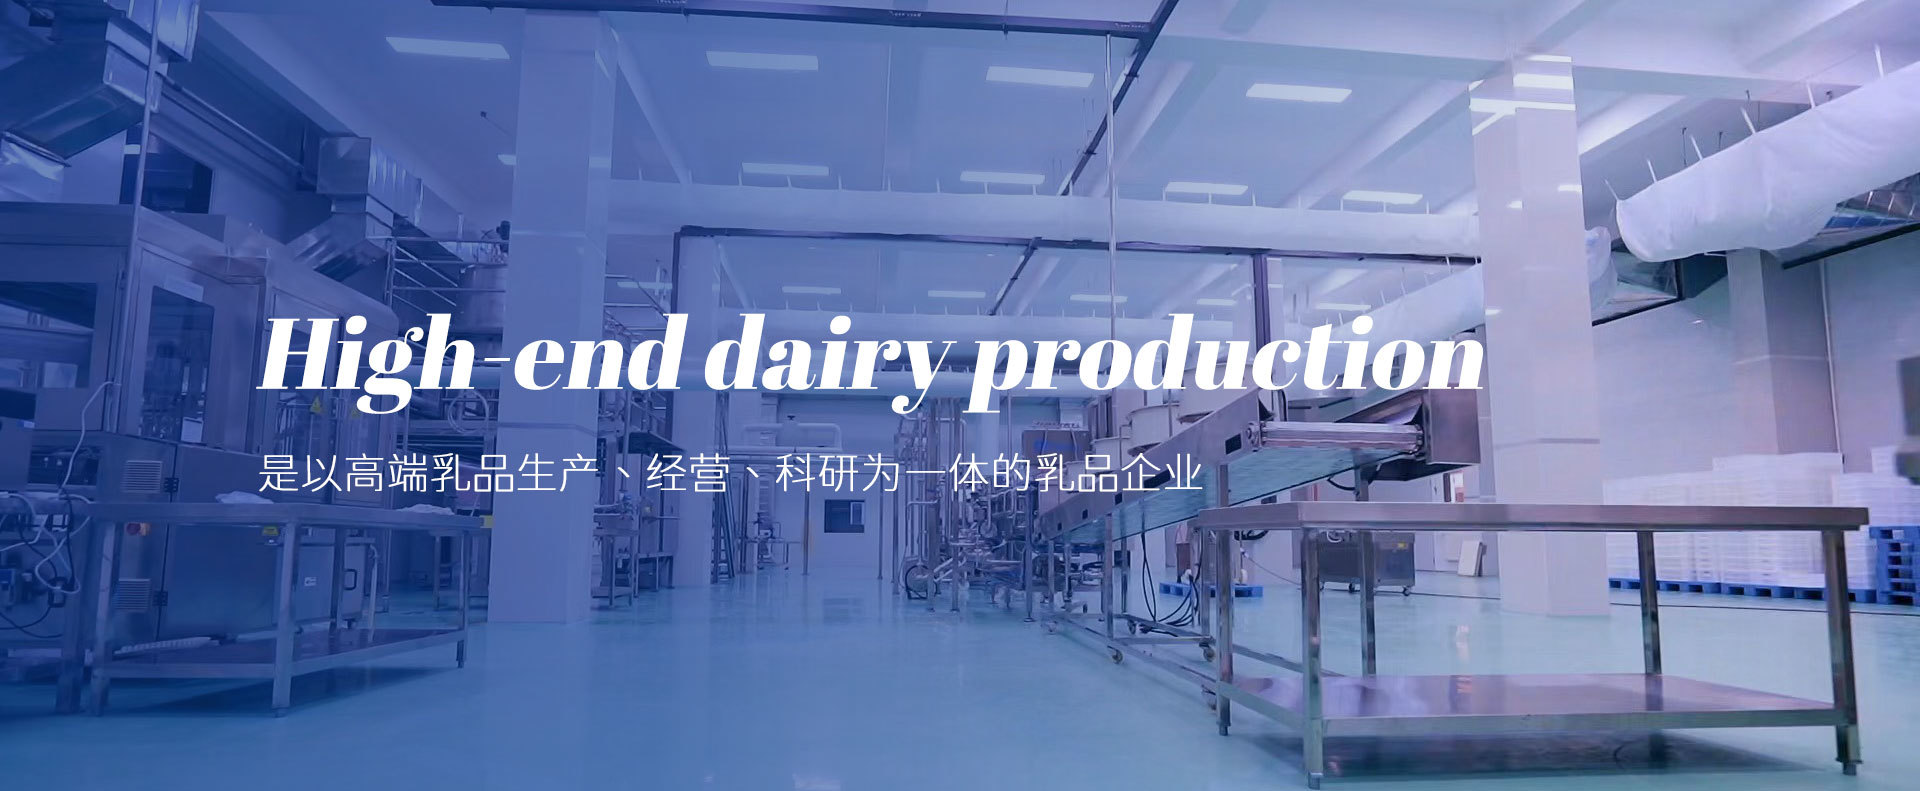 高端乳品生产